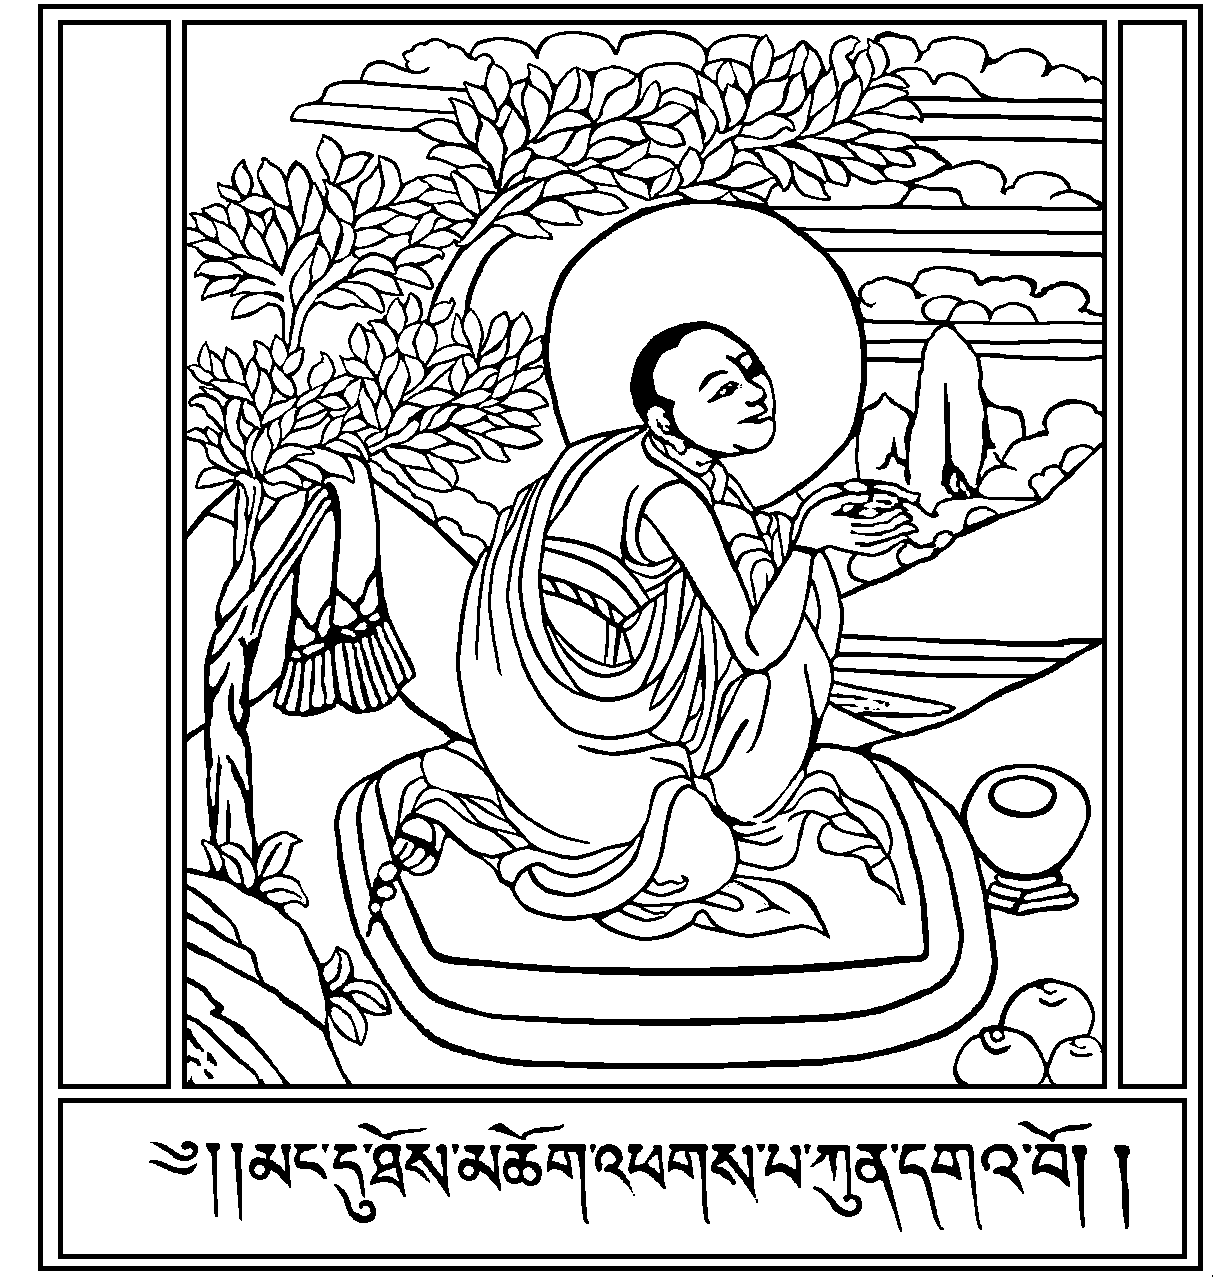 Antica illustrazione di un monaco tibetano